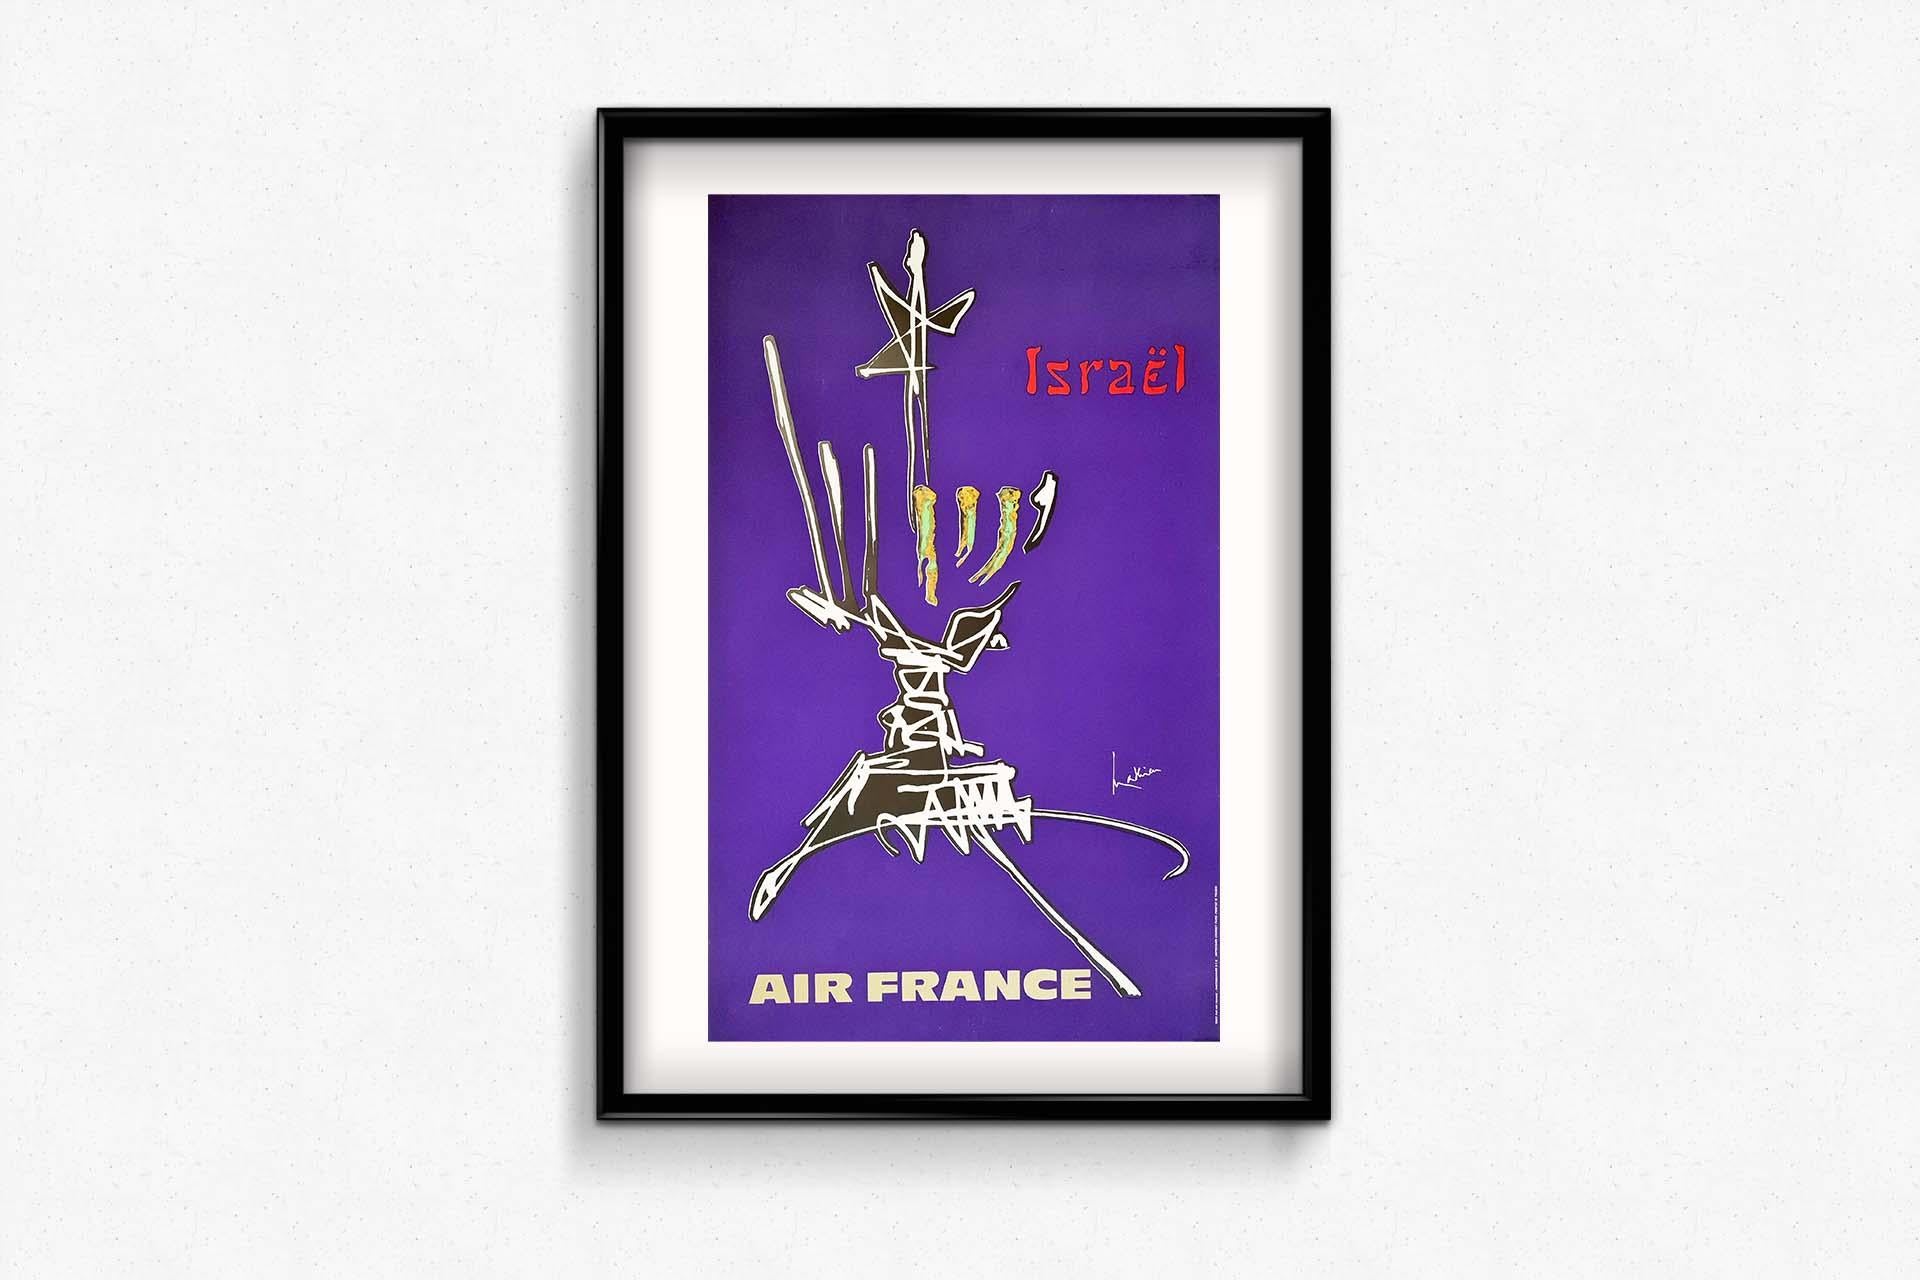 Georges Mathieu, französischer Maler und Designer, Meister des Informel, einer Bewegung, die mit der modernen Malerei der Nachkriegszeit verbunden ist, schuf 1968 eine Serie von 16 Plakaten für Air France.
Dieser steht für Israel und deutet auf den